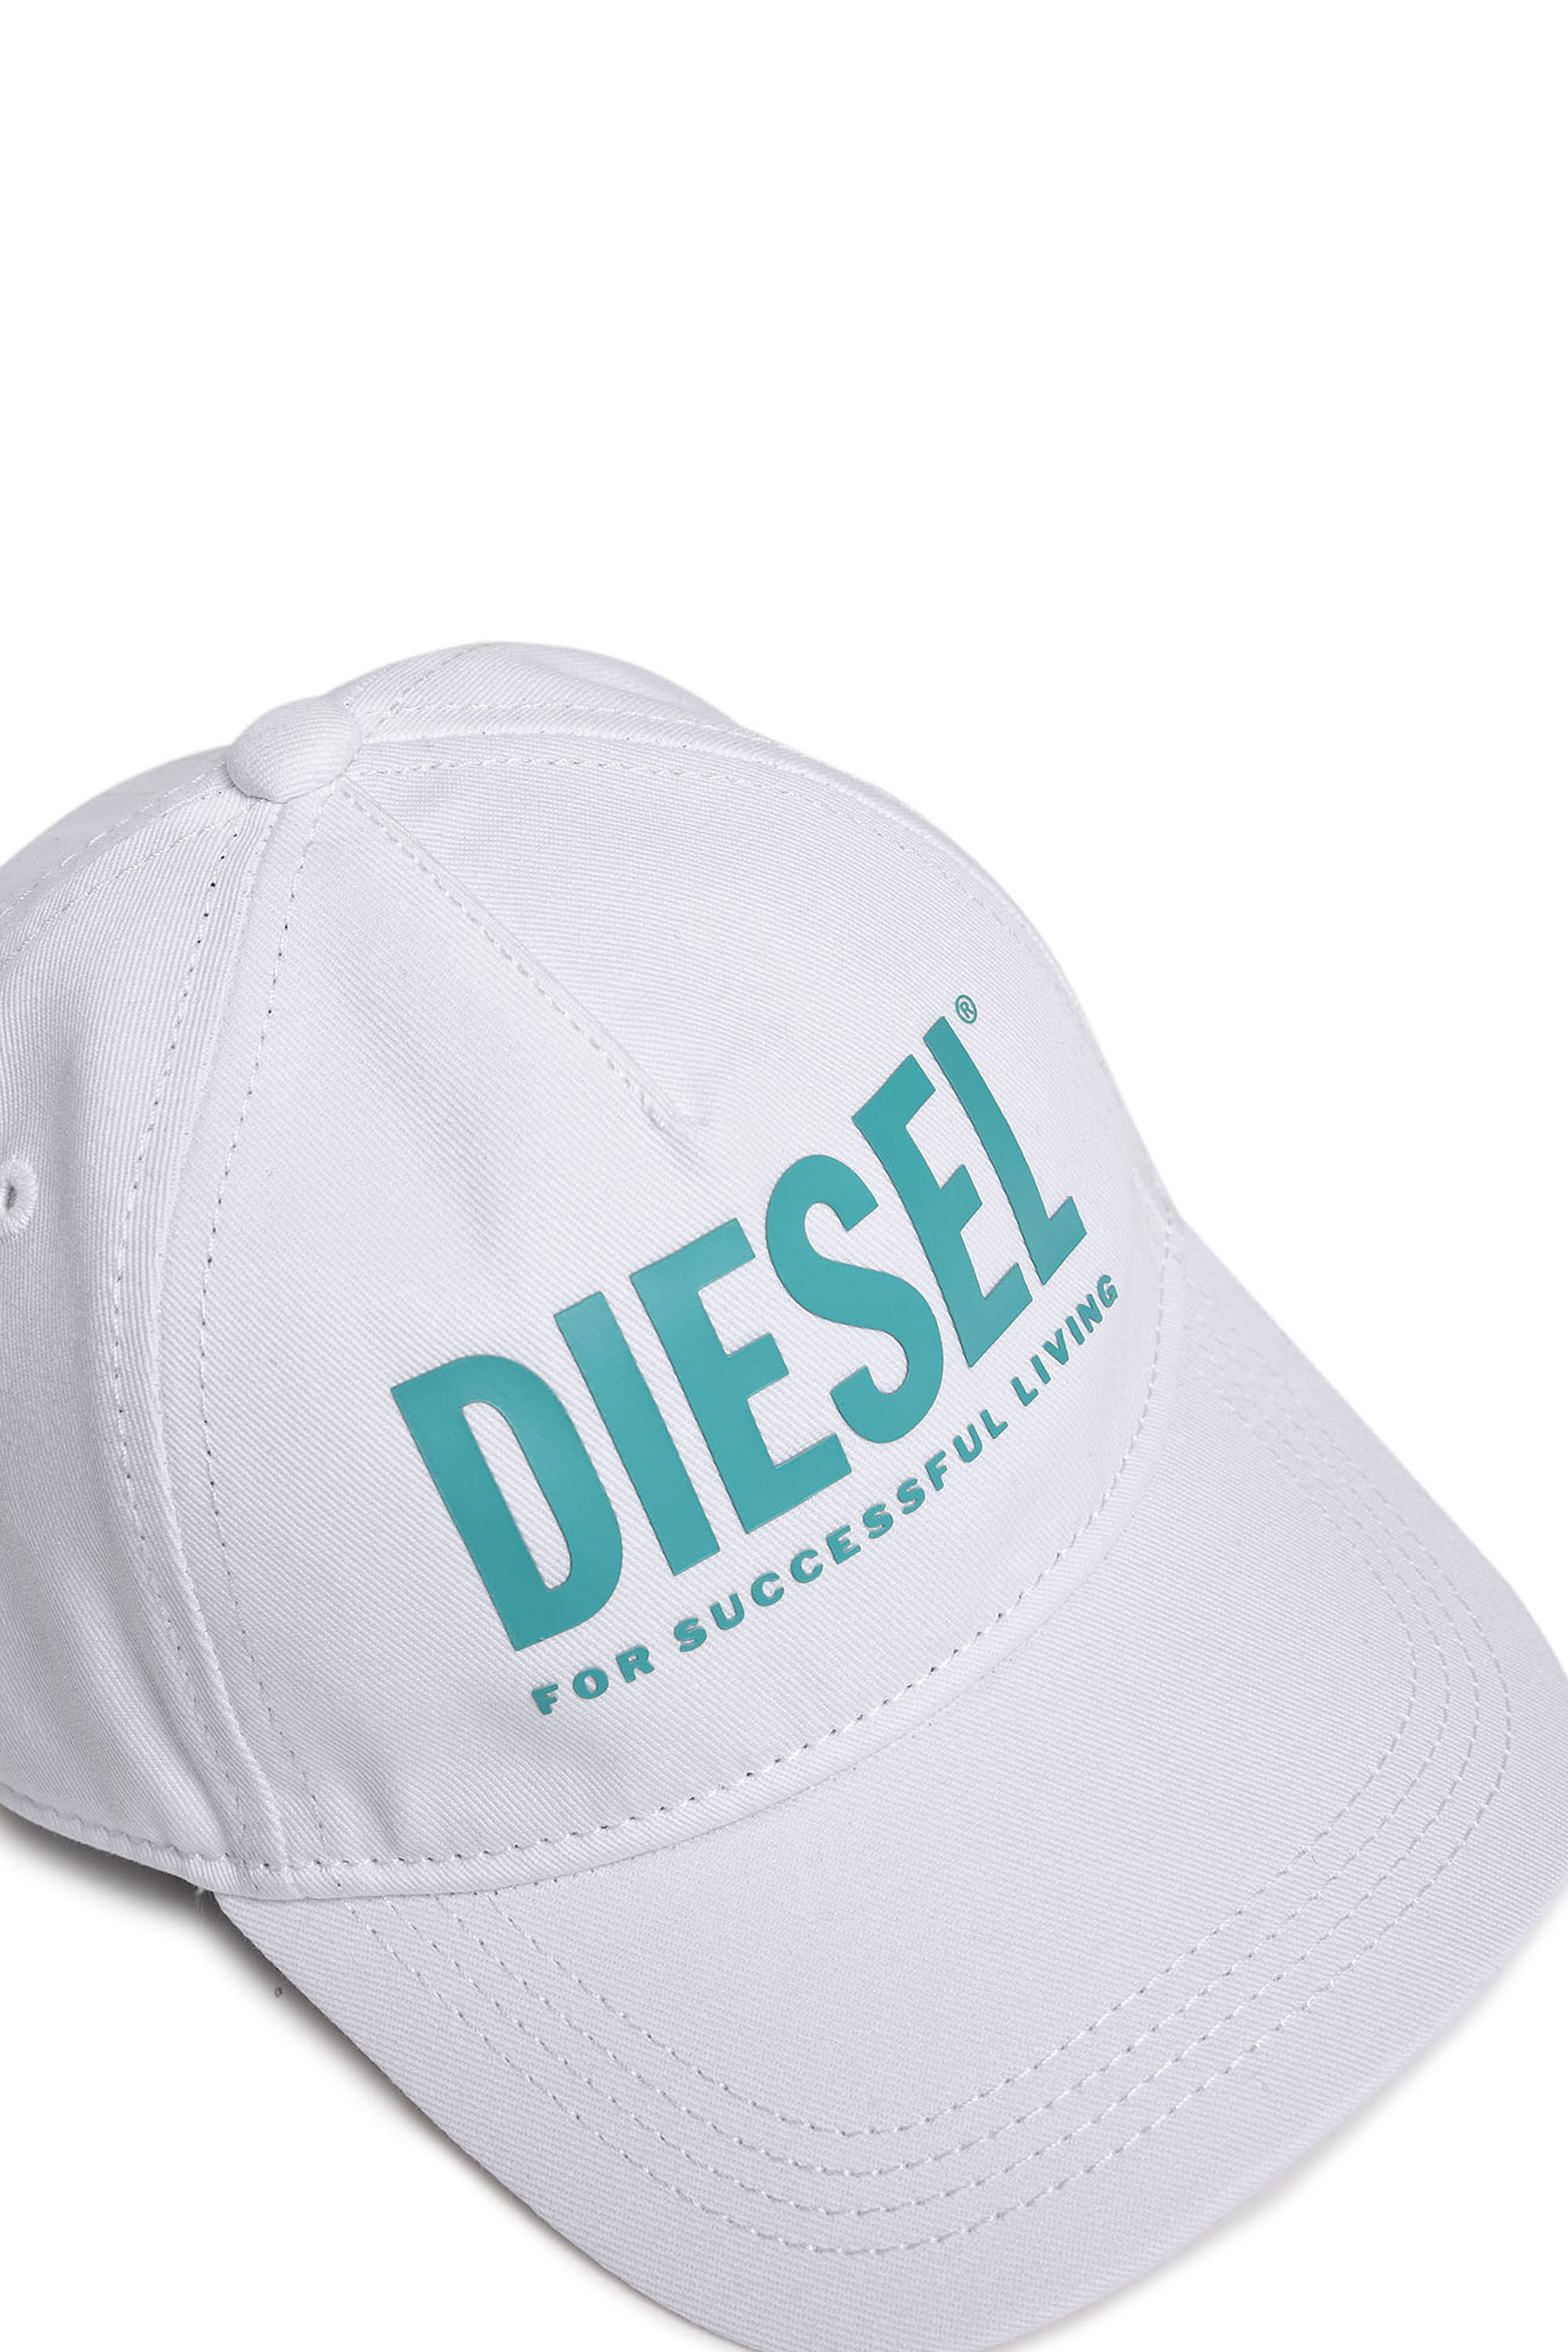 Diesel - FTOLLYB,  - Image 3